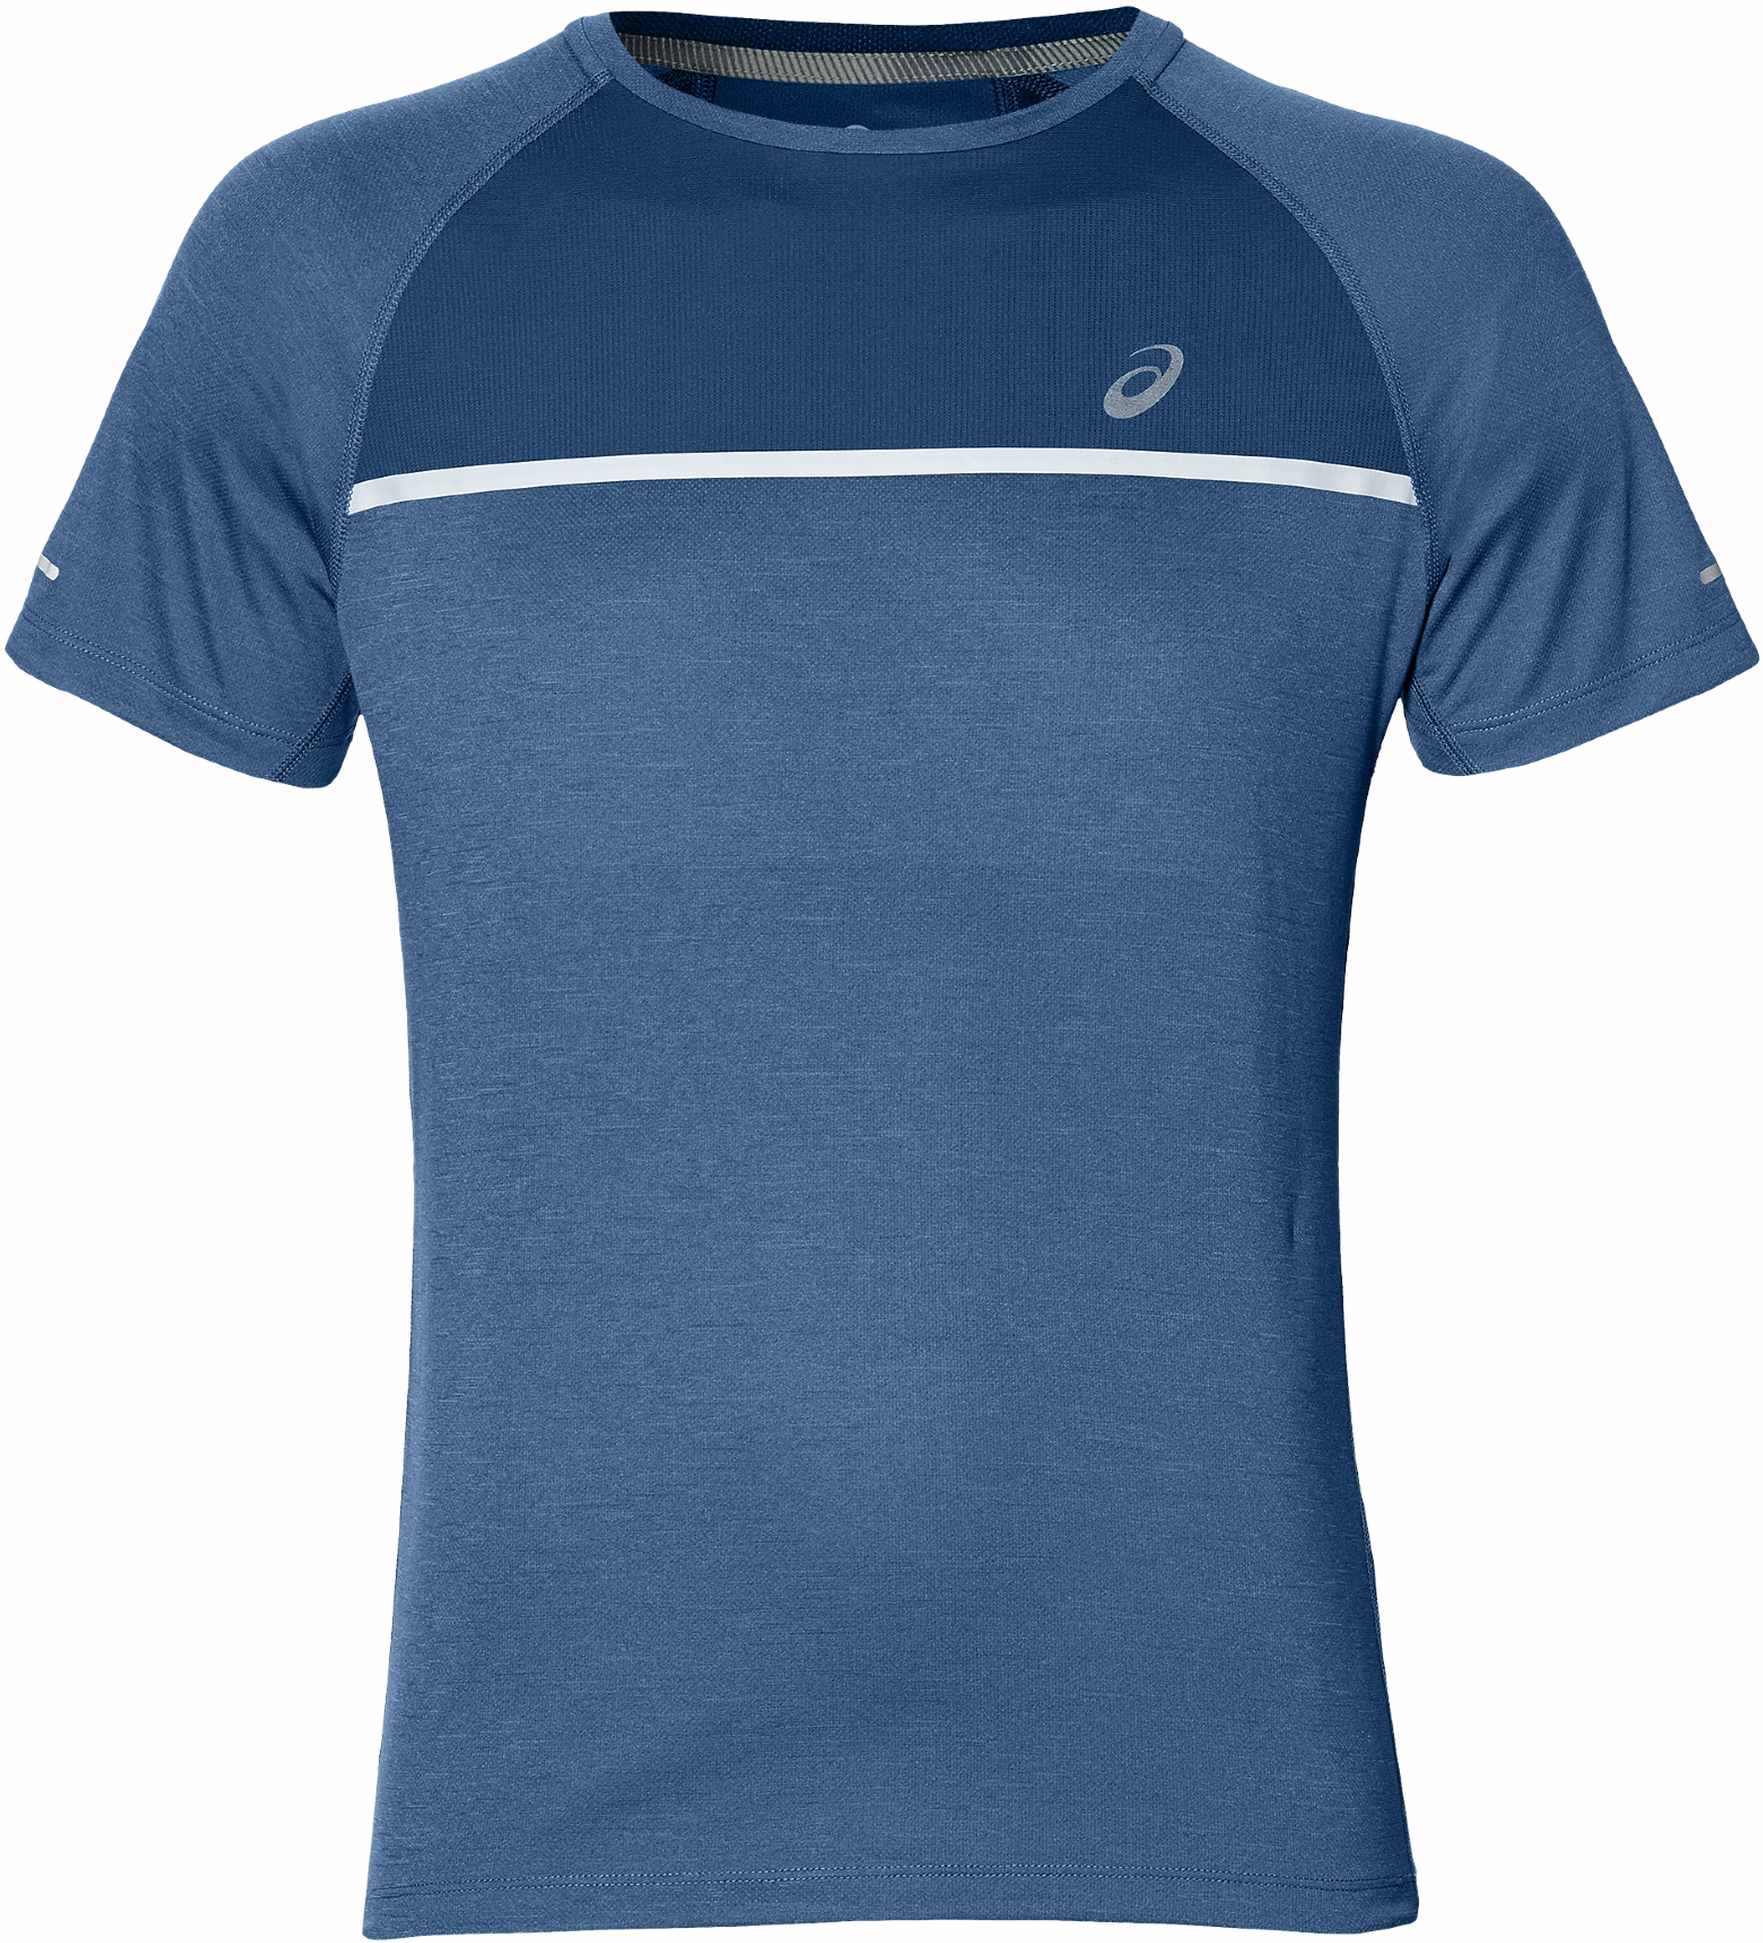 Men's running shirt